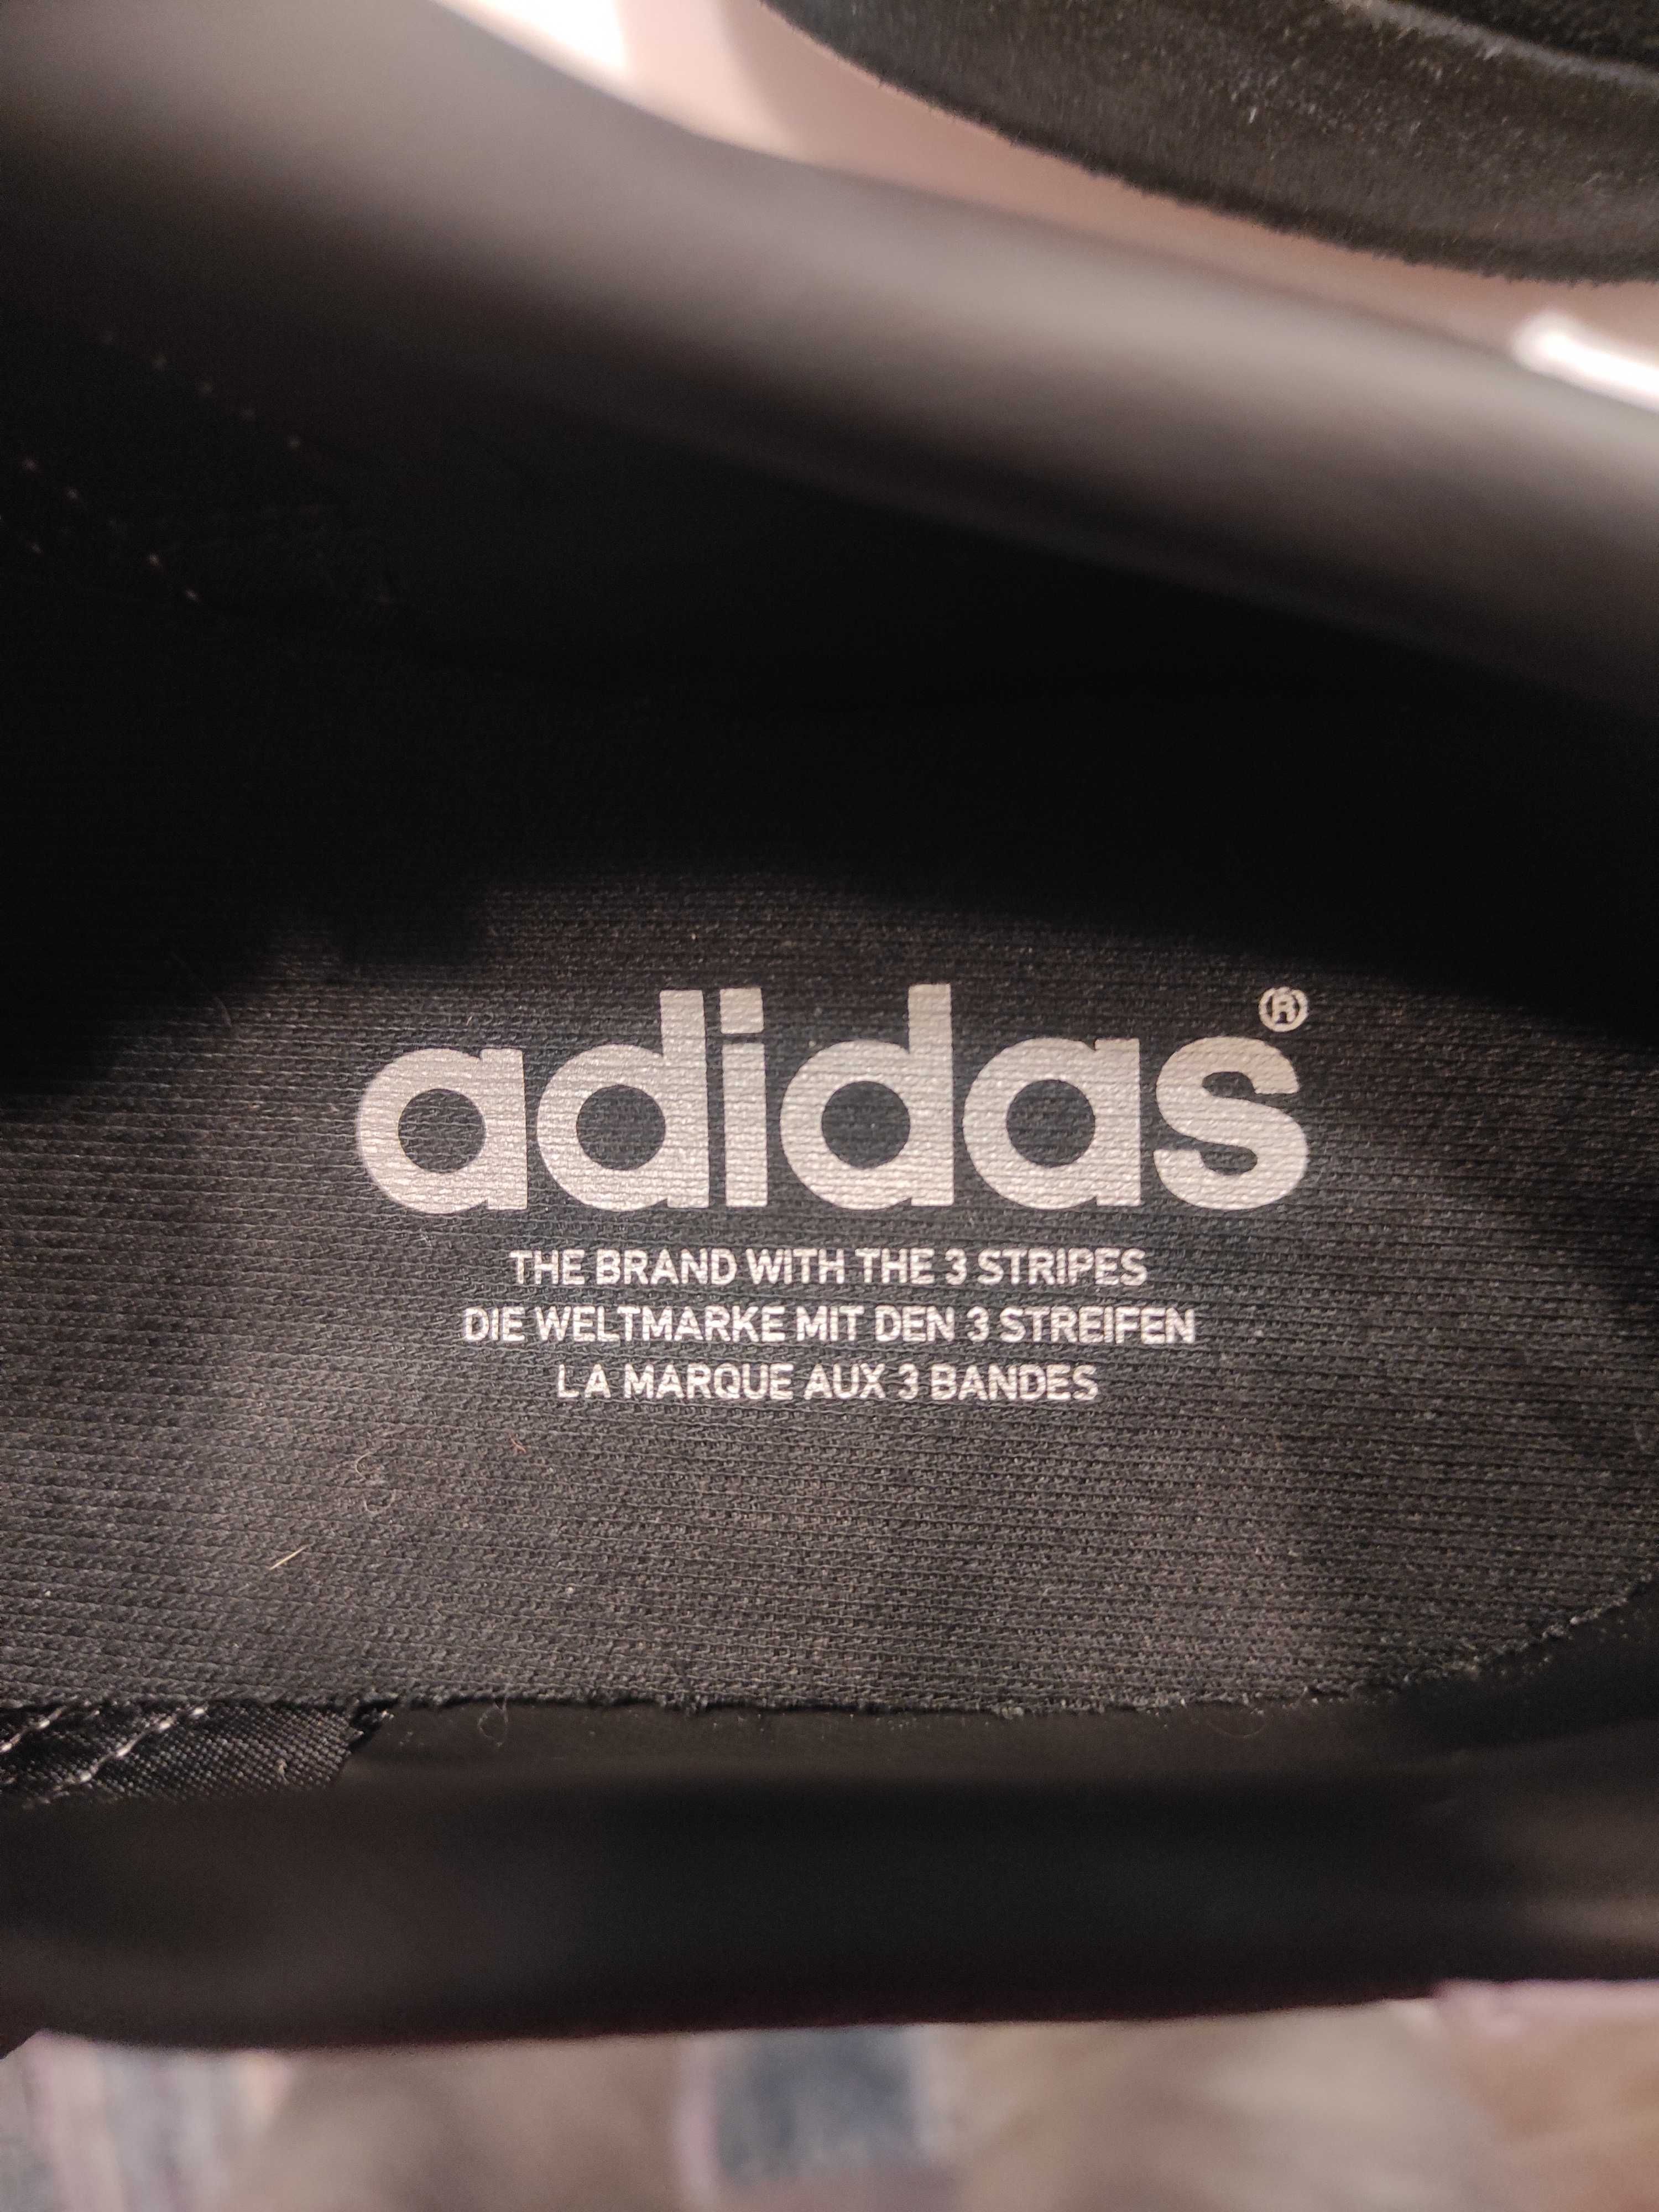 Мужские кроссовки,41 размер,фирменные-adidas, новые - кожаные.